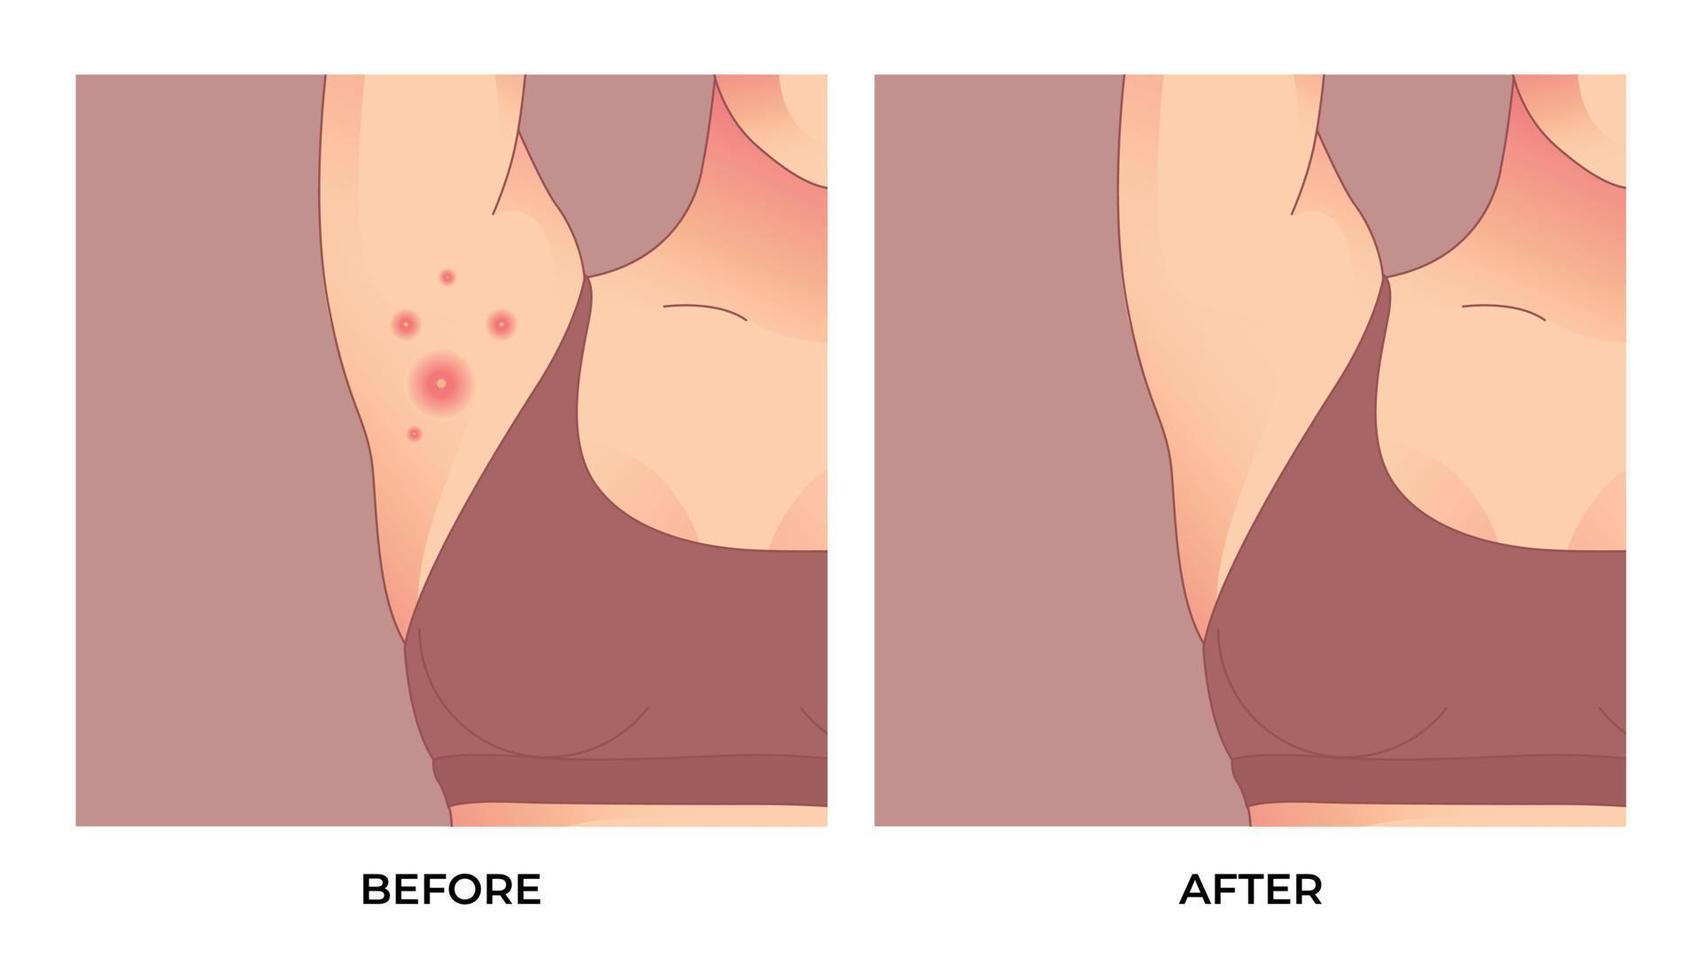 foliculitis inflamatoria, acné inverso, hidradenitis supurativa en la axila. Tratamiento del acné antes y después. concepto de cuidado de la piel. vector